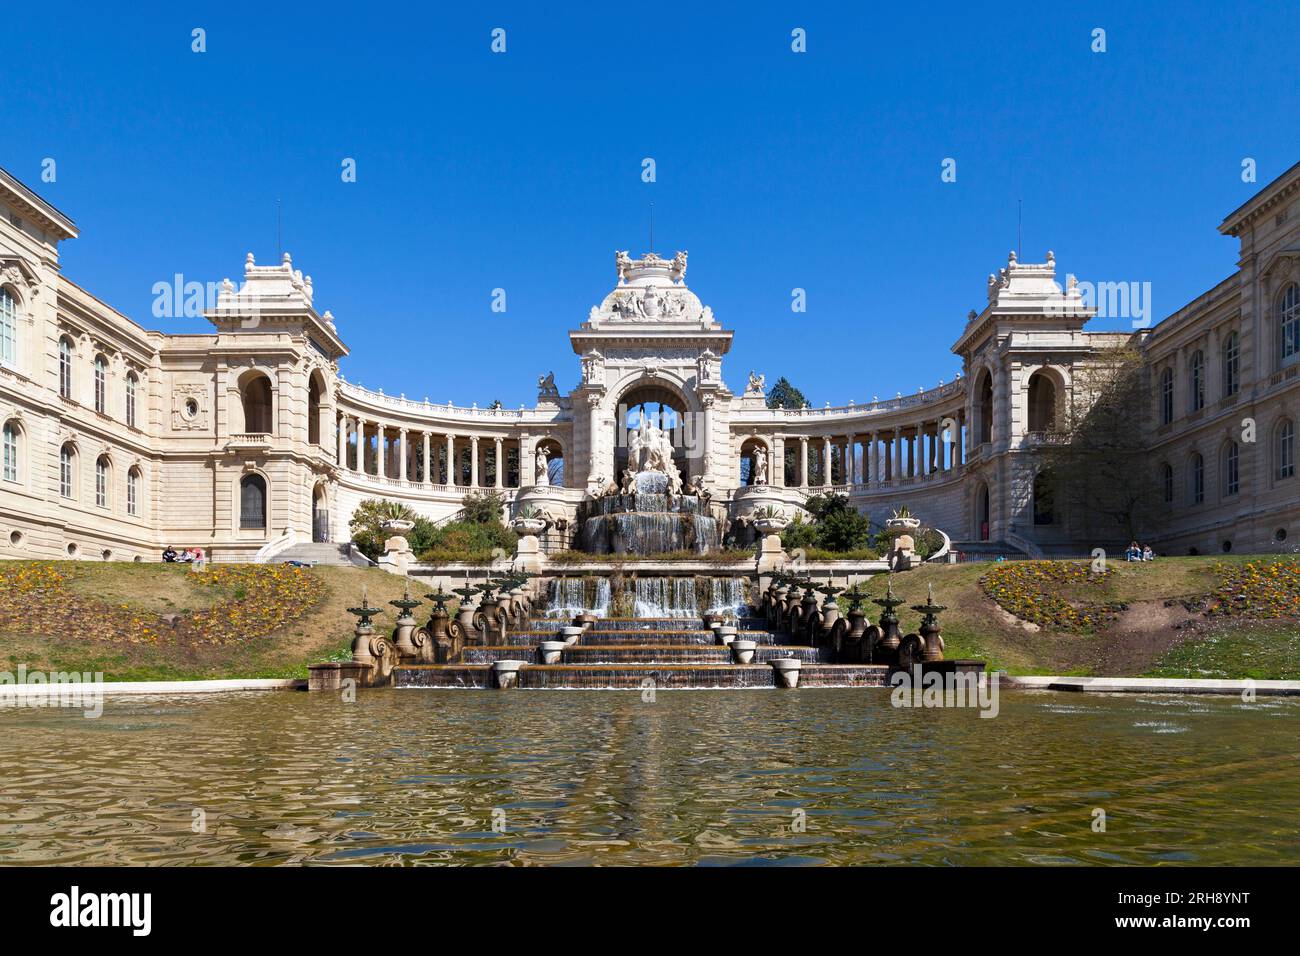 Marseille, Frankreich - März 23 2019: Das château d'Eau des Palais Longchamp. Das Palais Longchamp wurde 1839 gegründet, um den Bau zu feiern Stockfoto